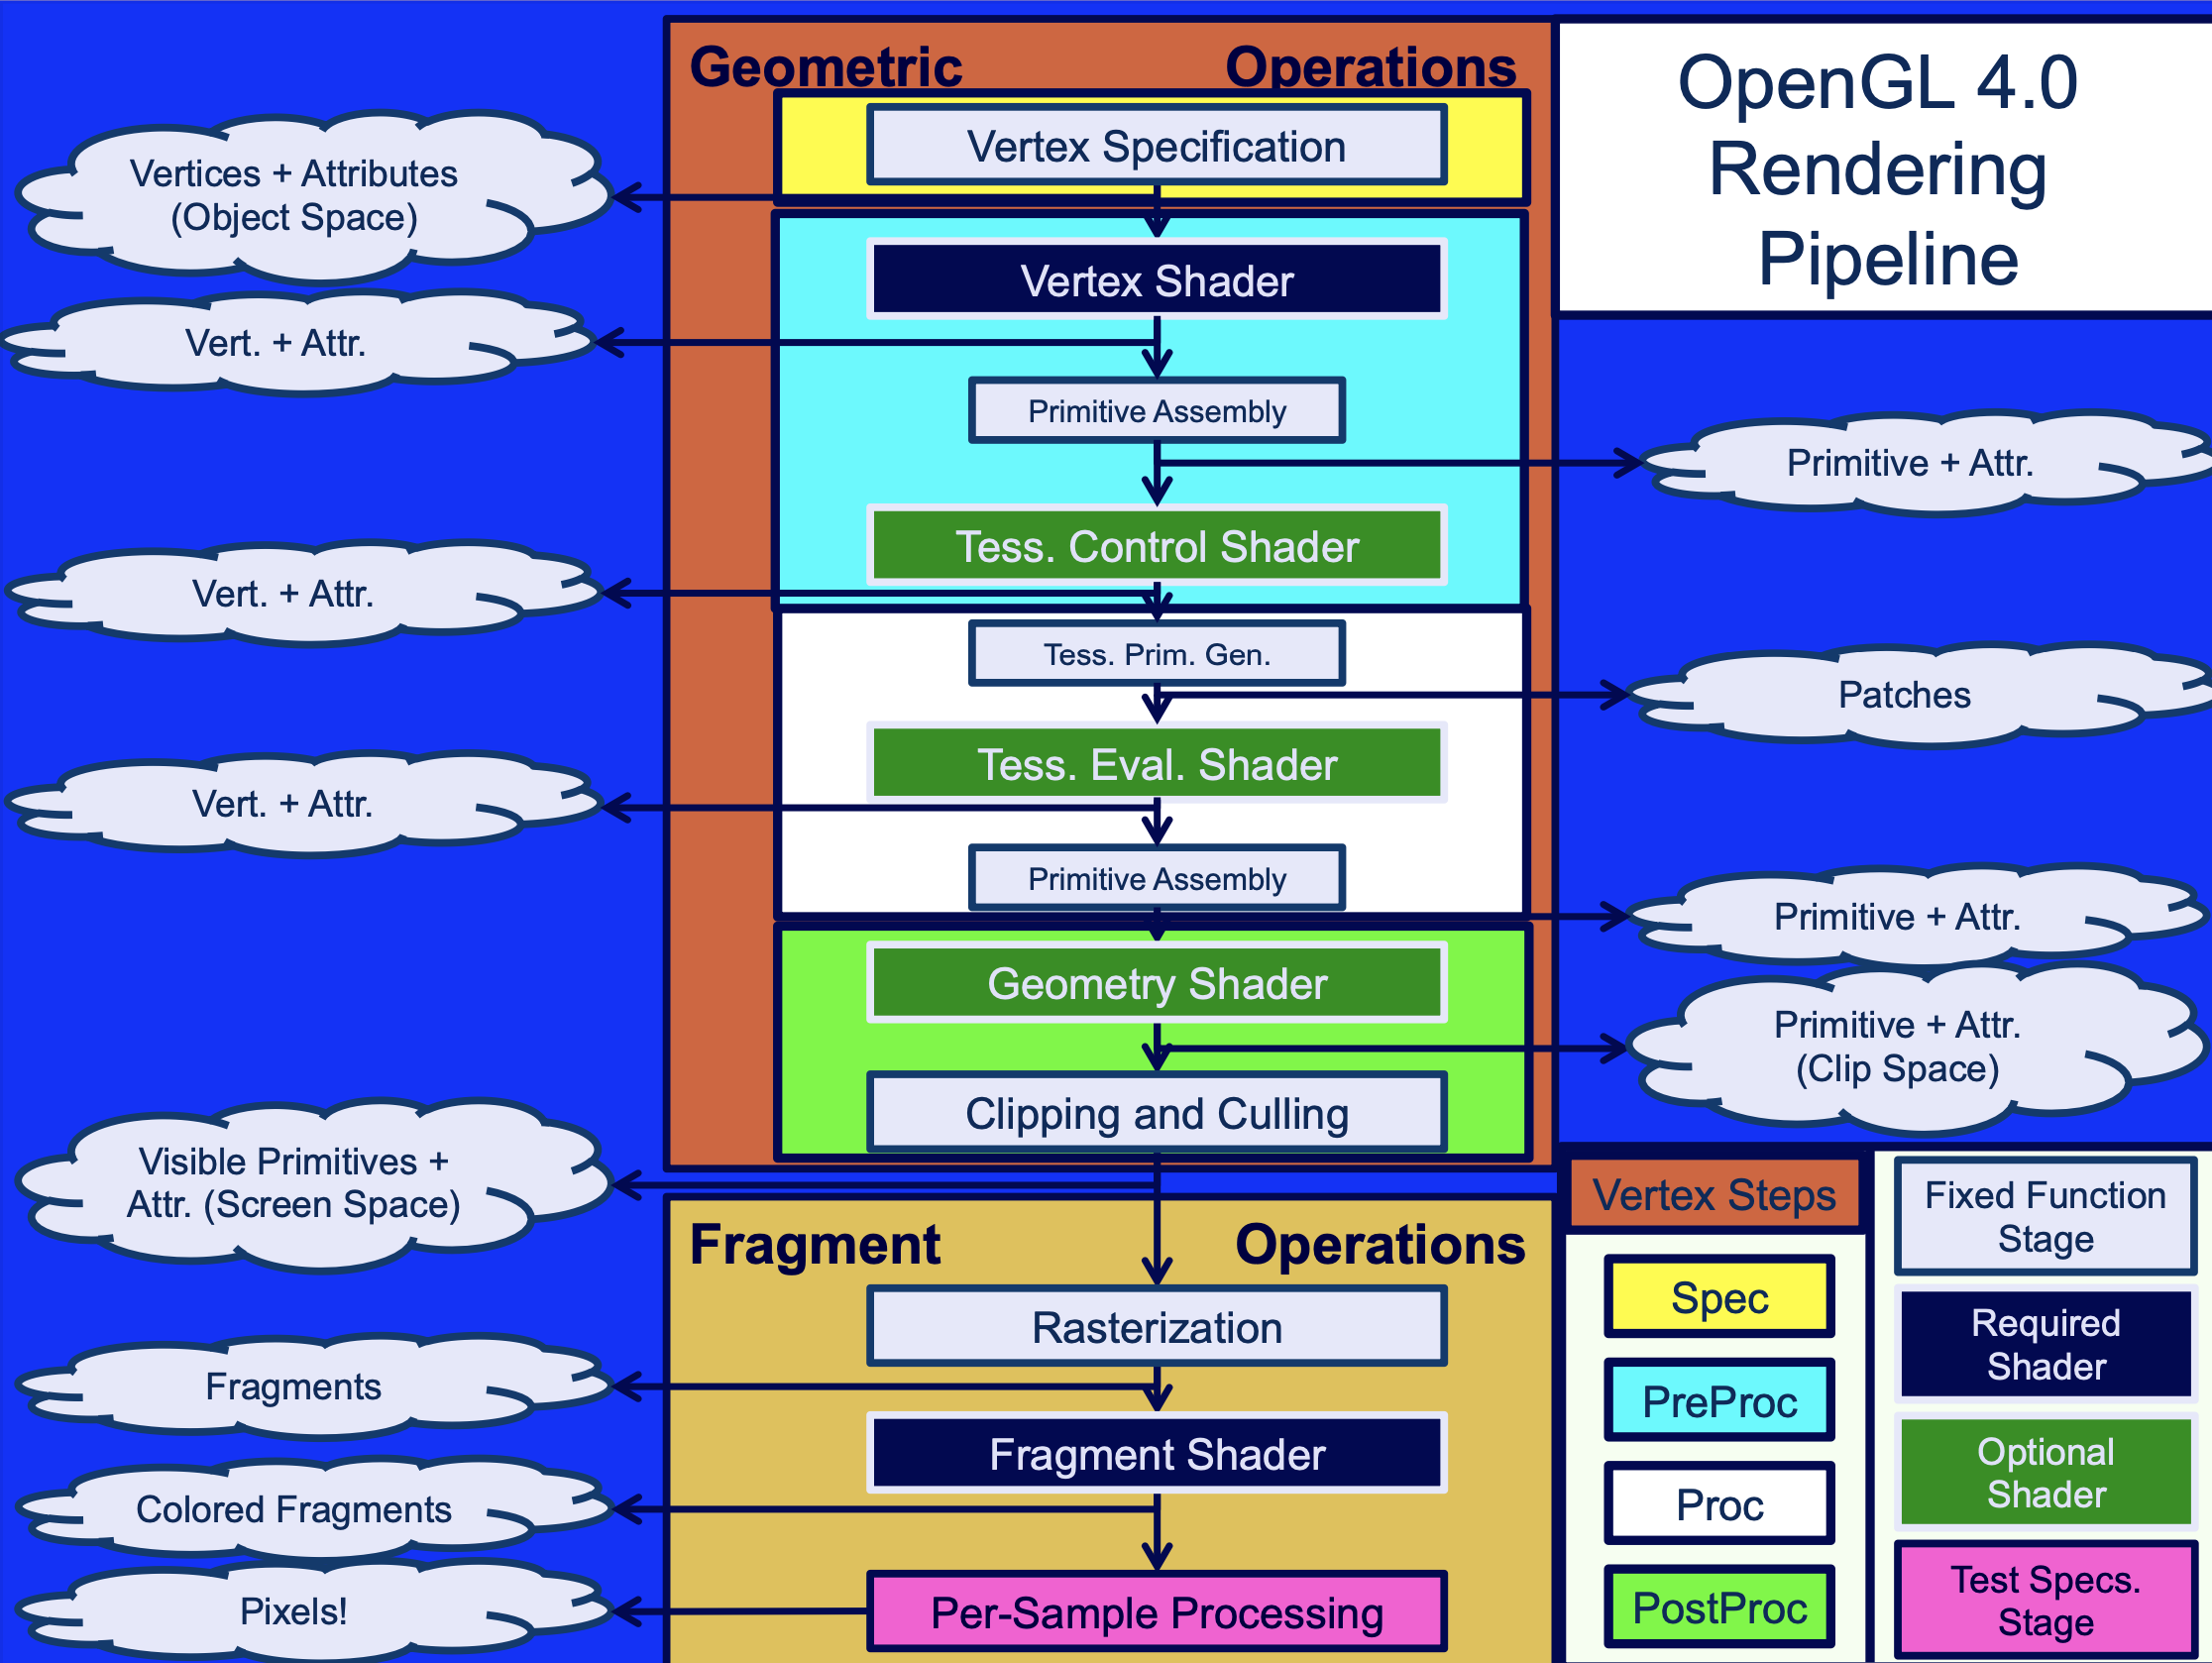 OpenGL 4.0 Rendering Pipeline